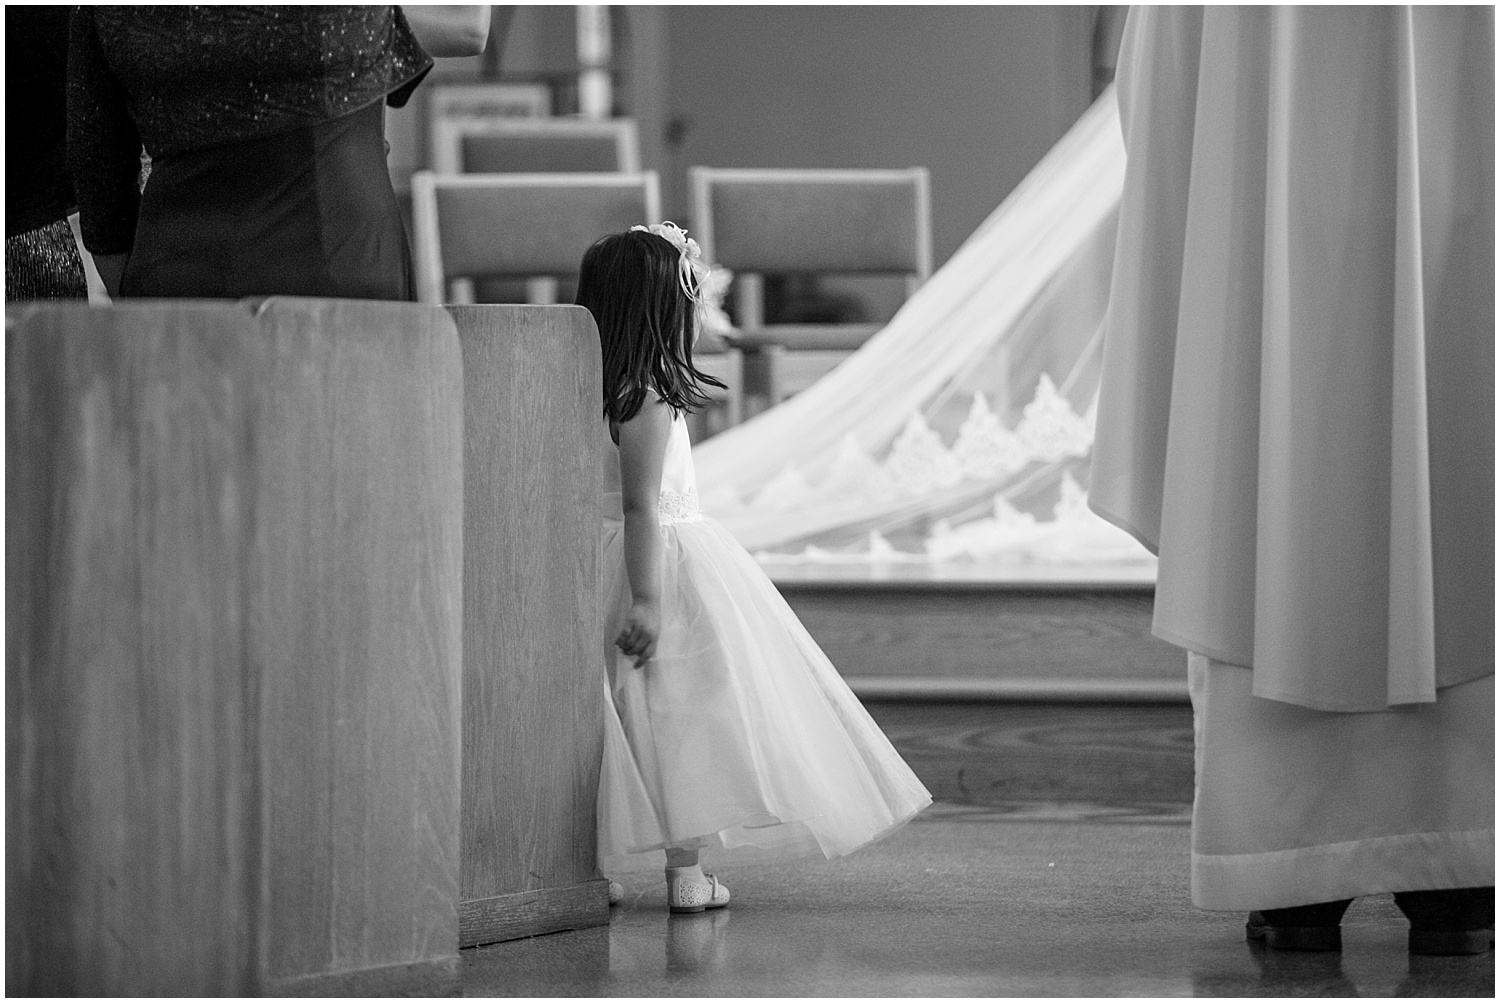 Catholic wedding ceremony at St Catherine of Sienna in Seattle, Washington.